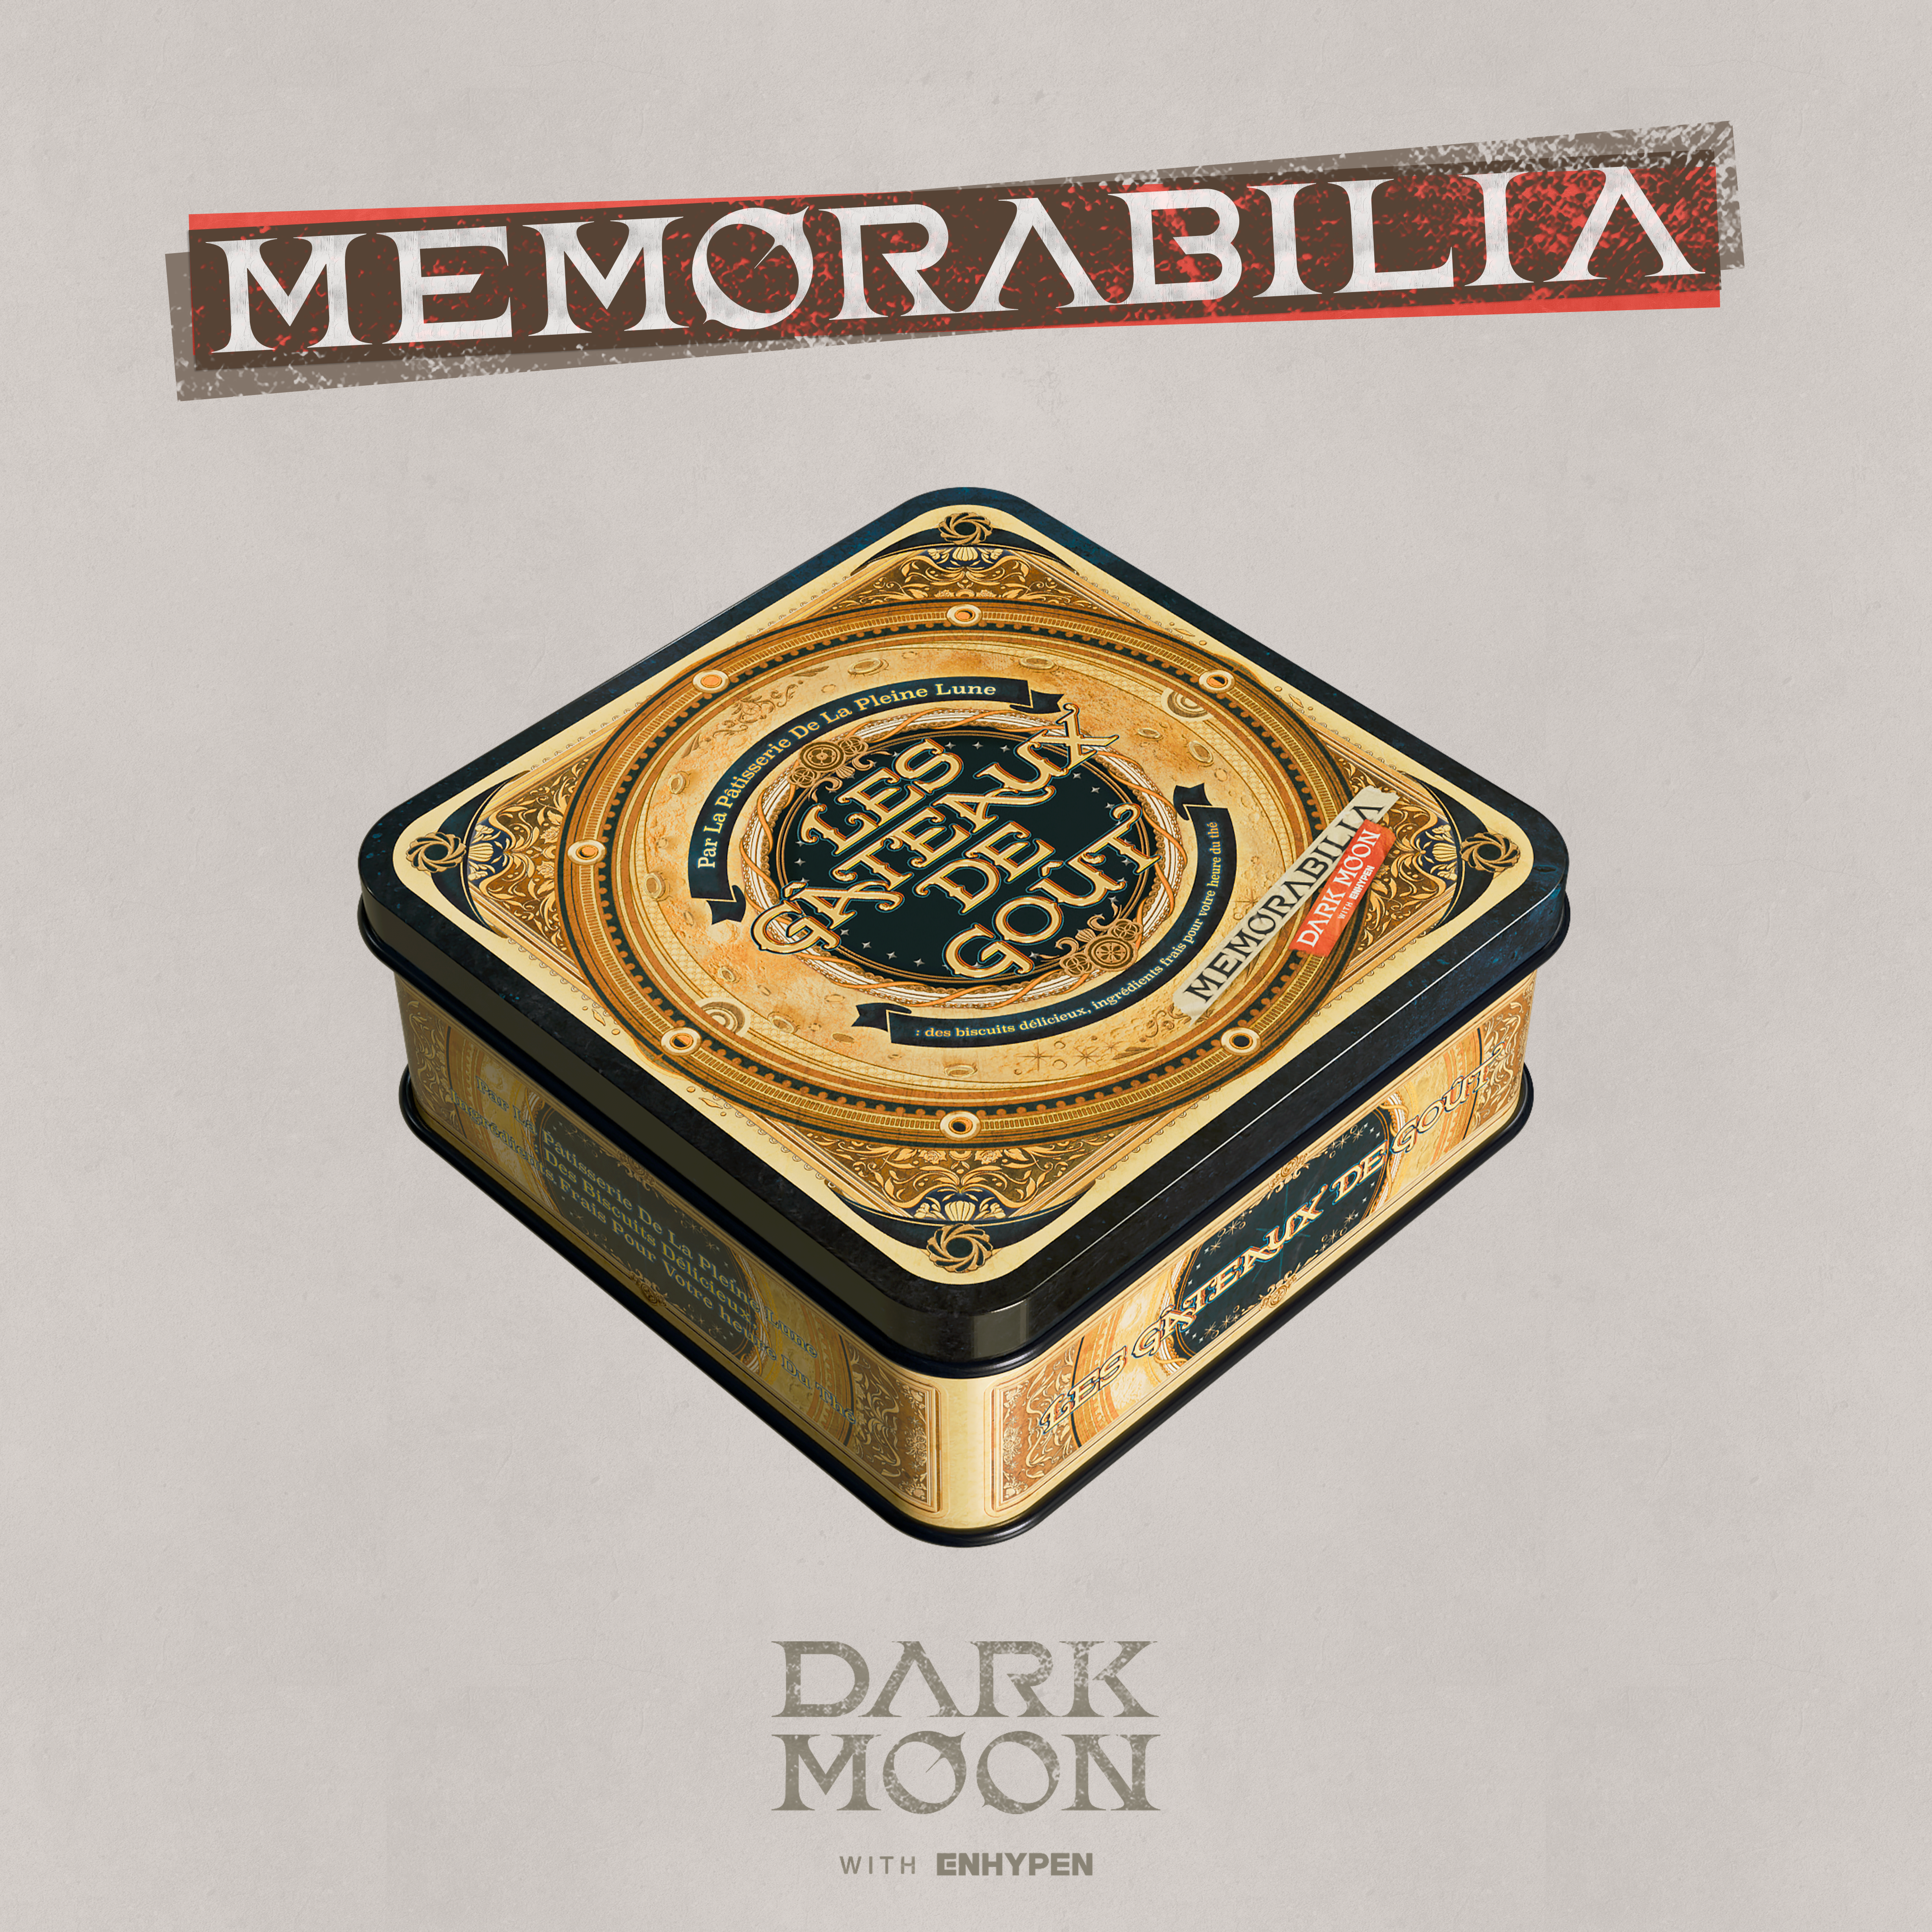 [PRE-ORDER] ENHYPEN - DARK MOON SPECIAL ALBUM MEMORABILIA (Moon ver.)